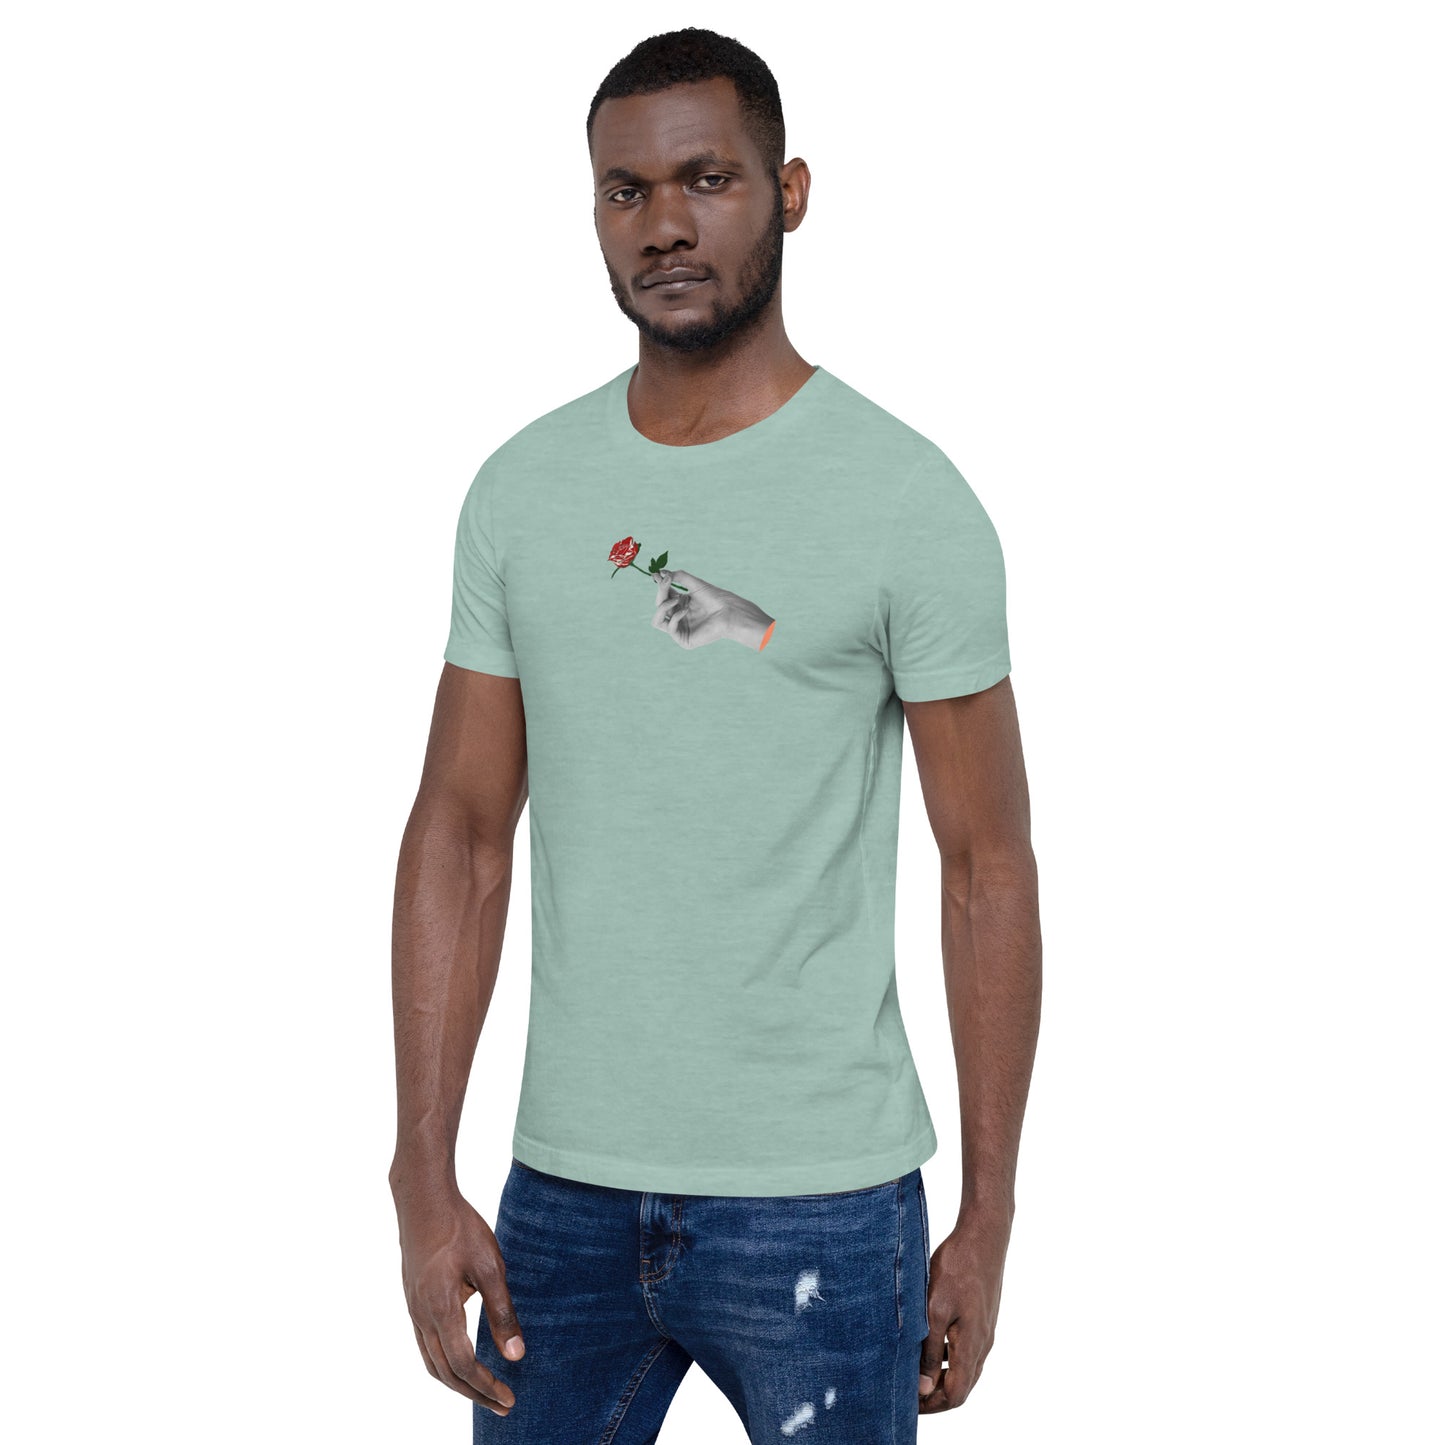 Adonis-Creations - Men's Simple Digital Print T-Shirt